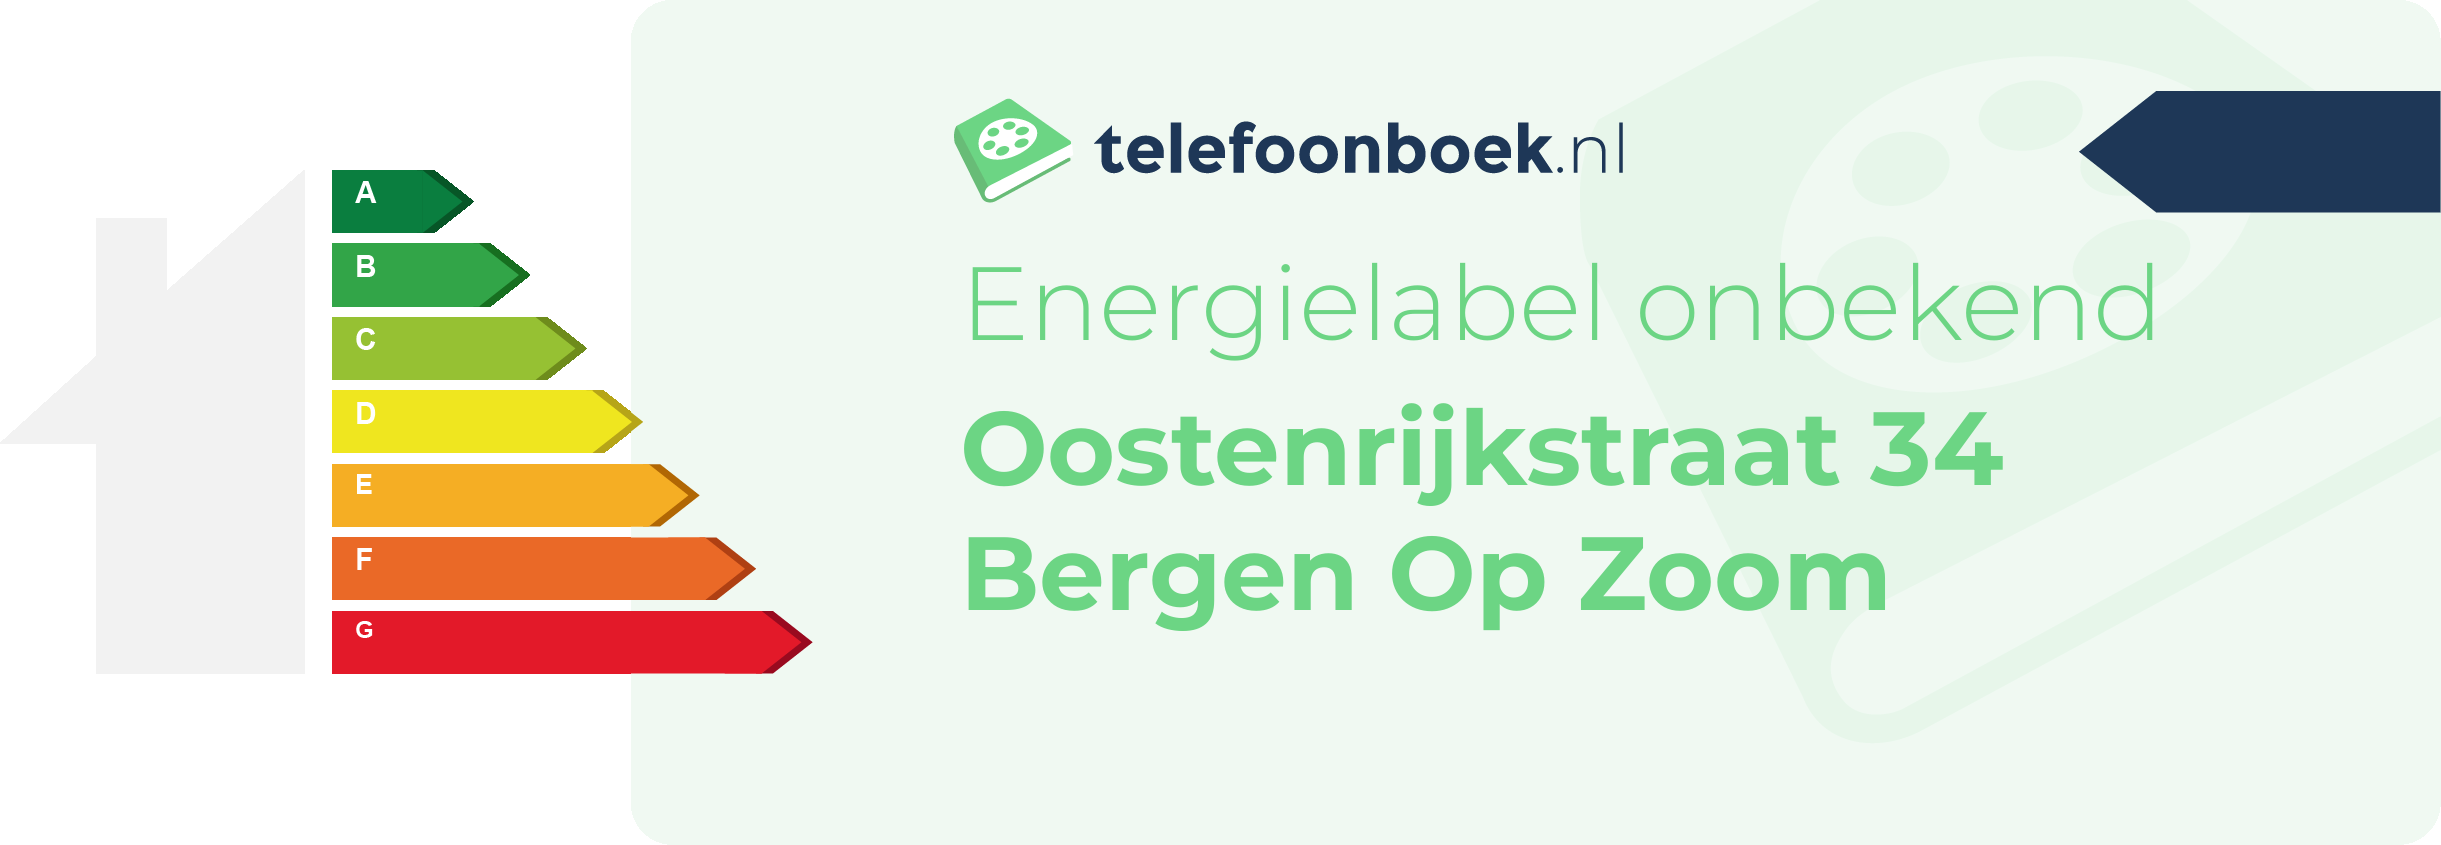 Energielabel Oostenrijkstraat 34 Bergen Op Zoom